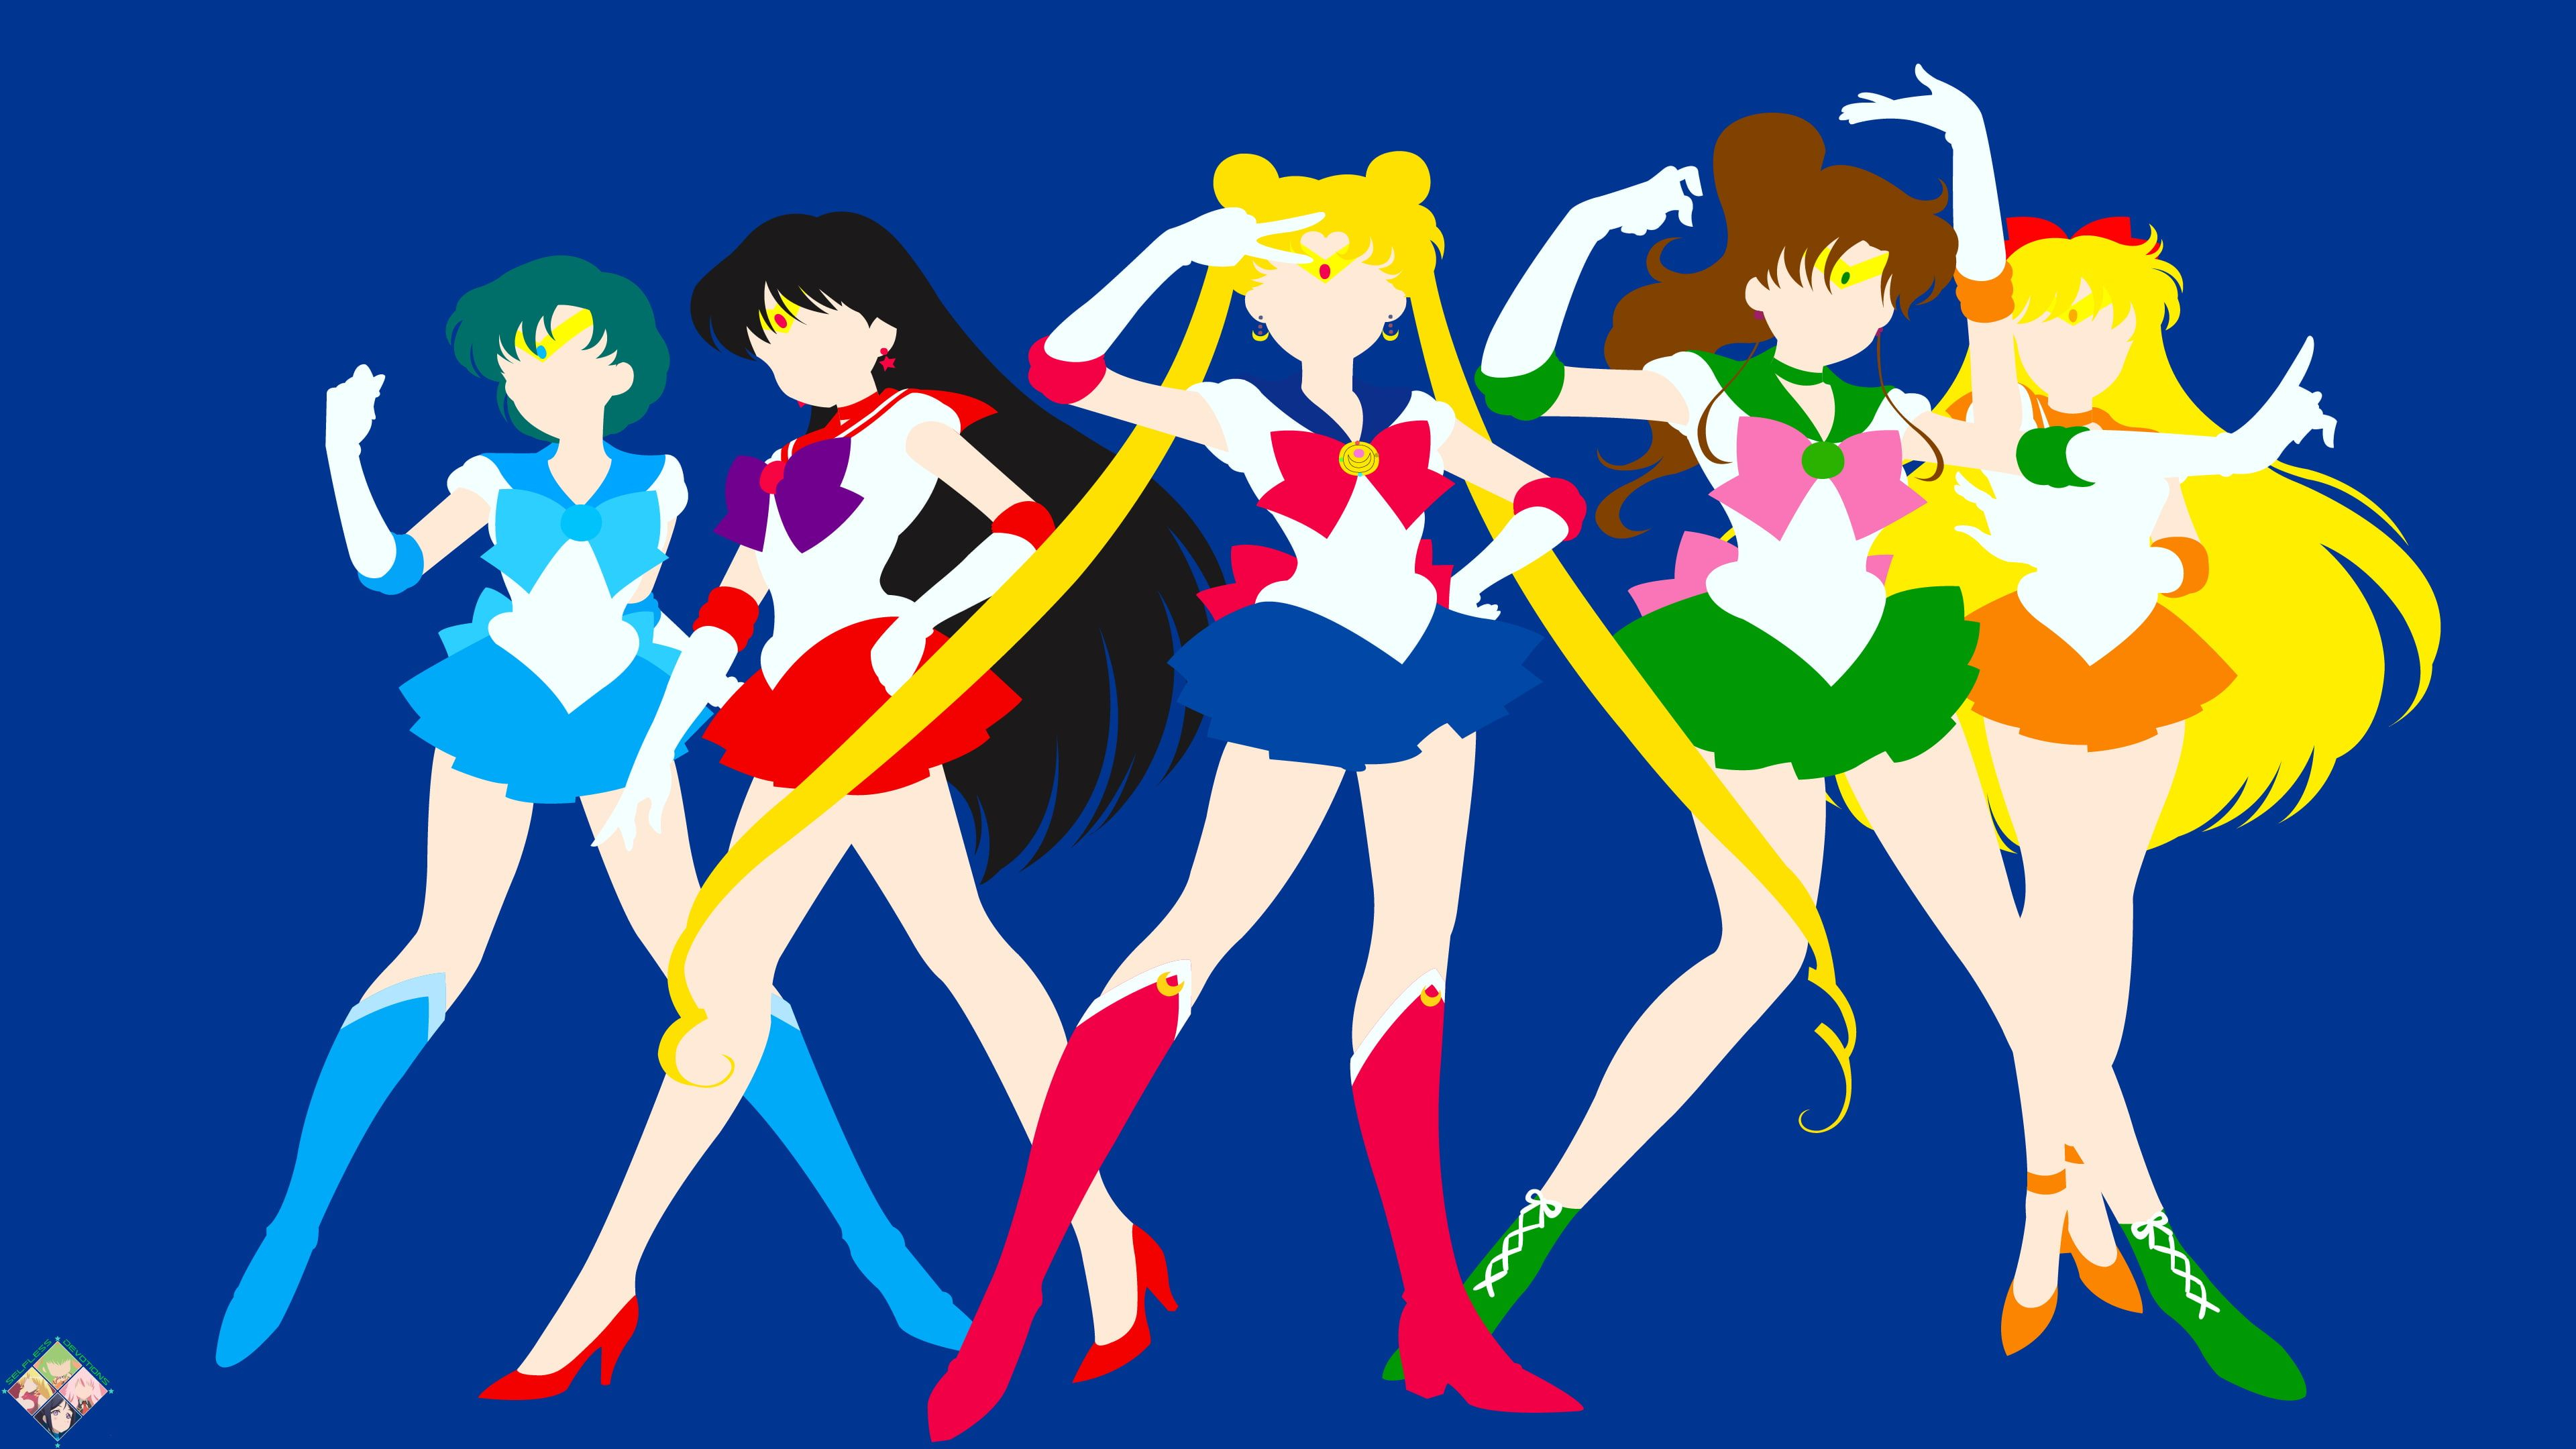 3840x2160 Sailor Moon Sailor Jupiter Sailor Mars Sailor Mercury Sailor Venus | Sailor moon wallpaper, Sailor moon s, Sailor mars